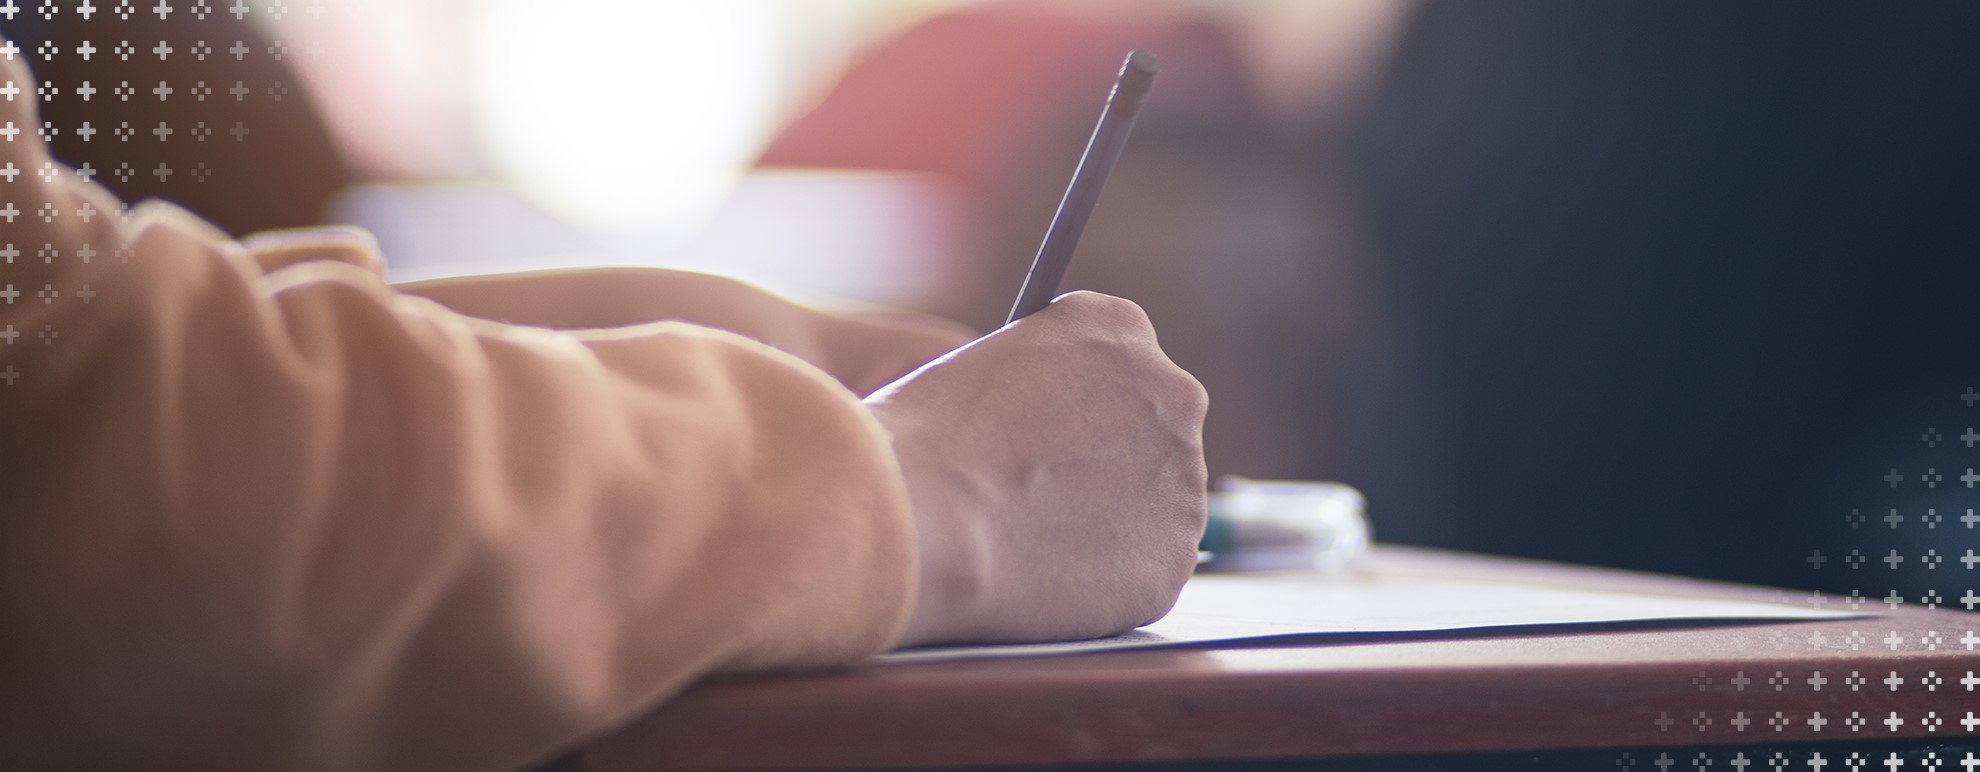 imagem de uma mão posicionada sobre uma mesa, segurando uma caneta, escrevendo uma redação